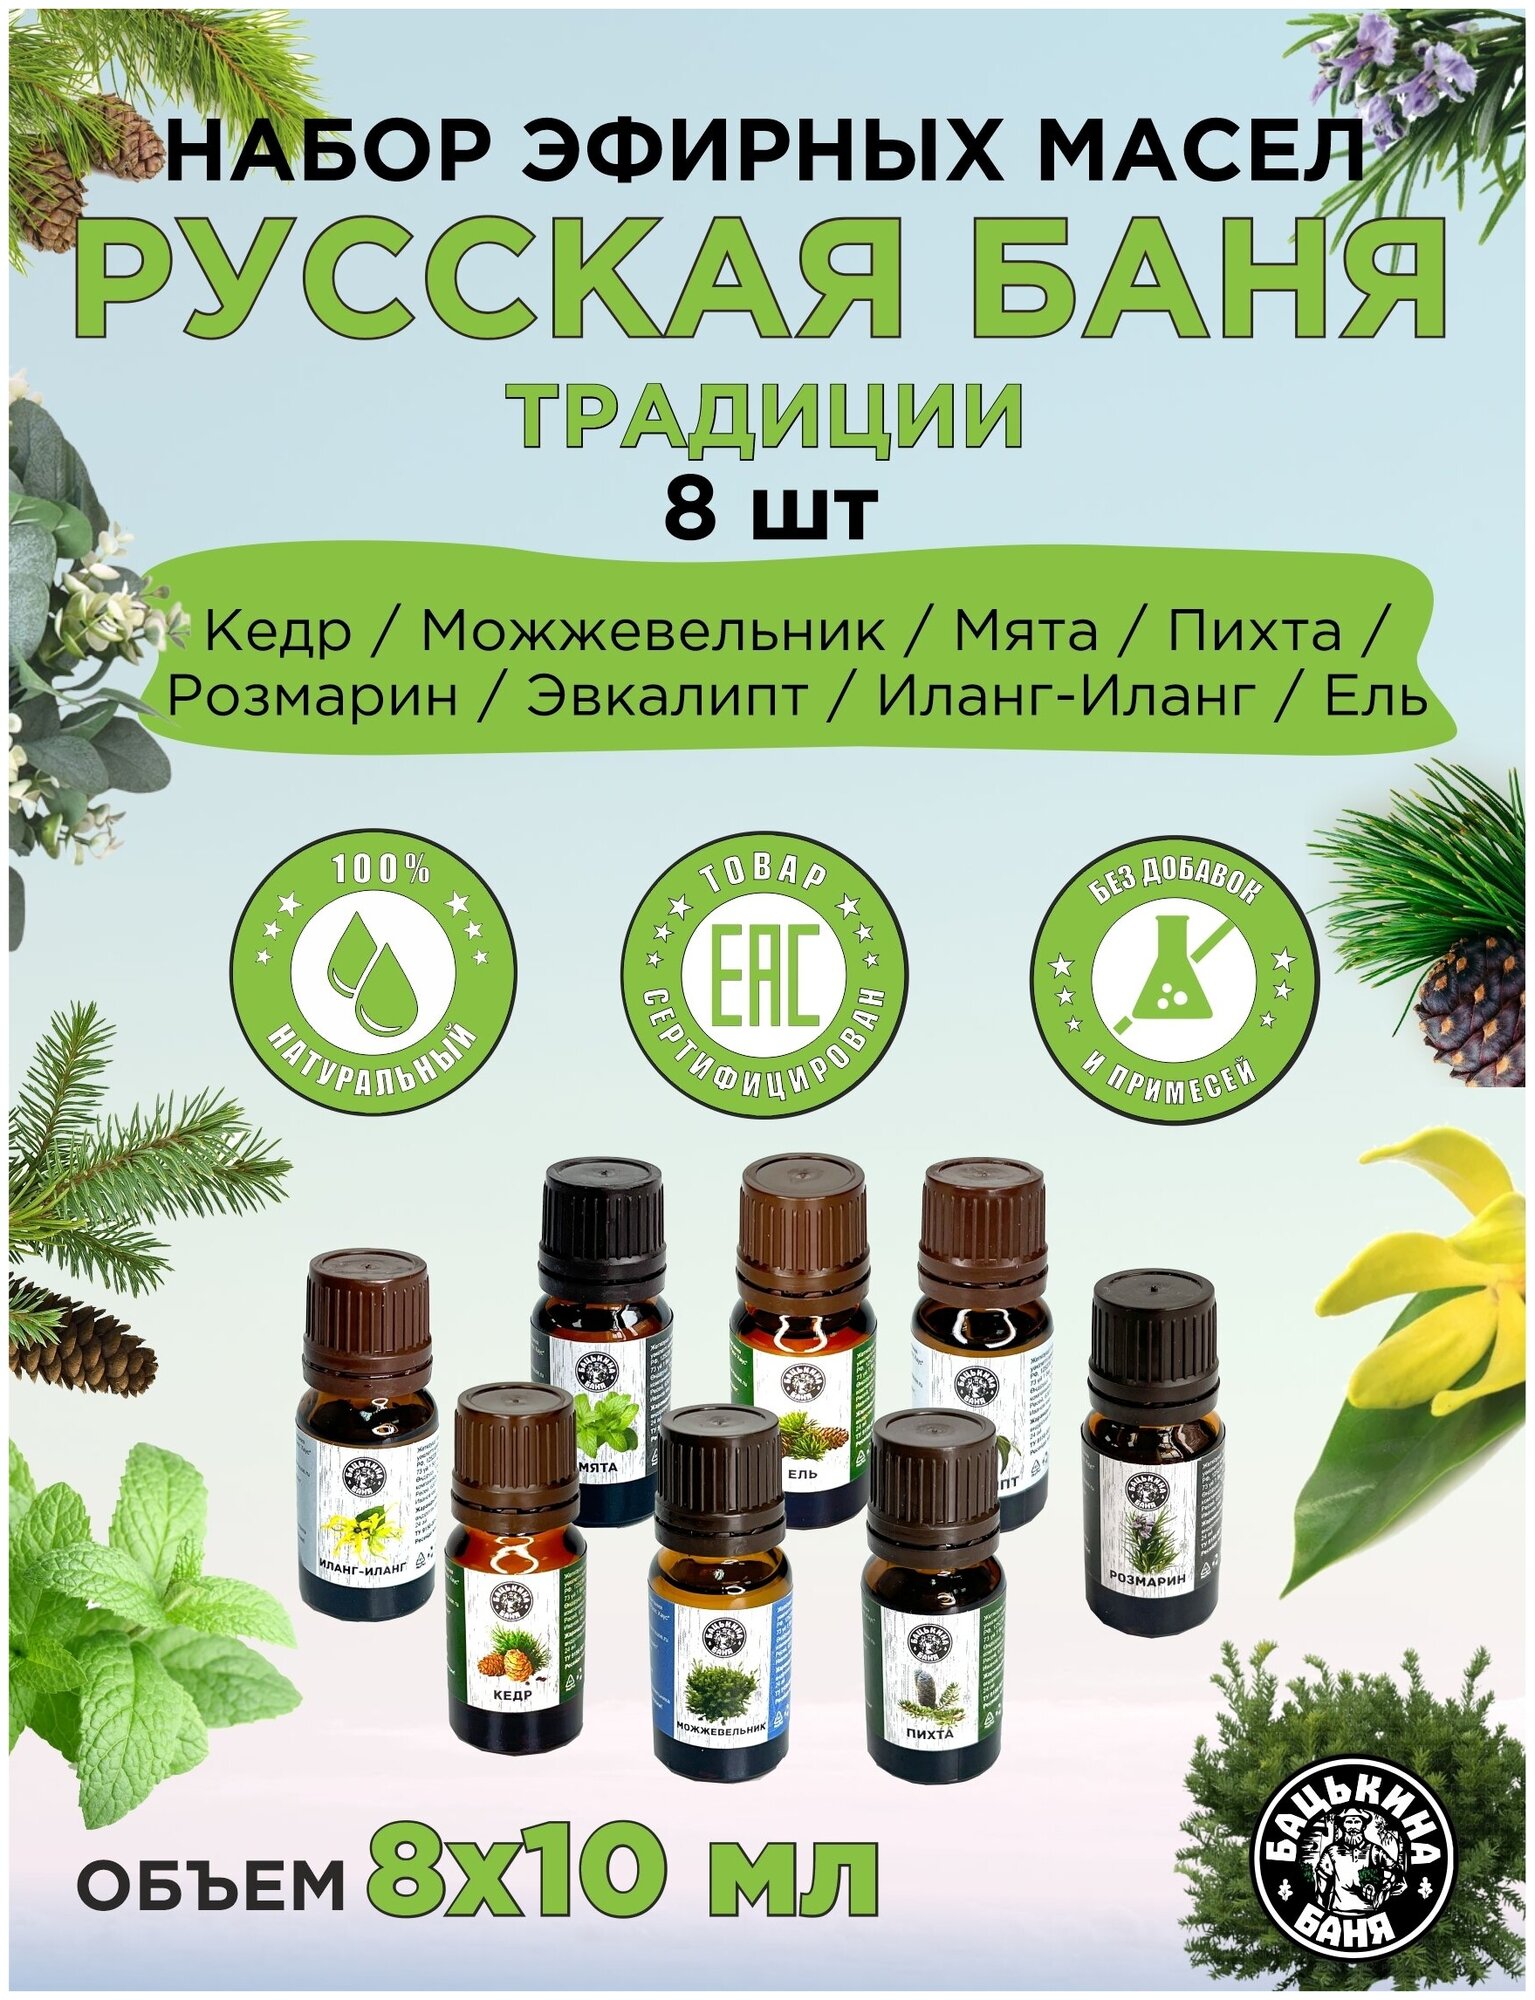 Эфирные масла натуральные для бани и сауны набор Бацькина баня ароматизатор для дома арома масла 8 шт.